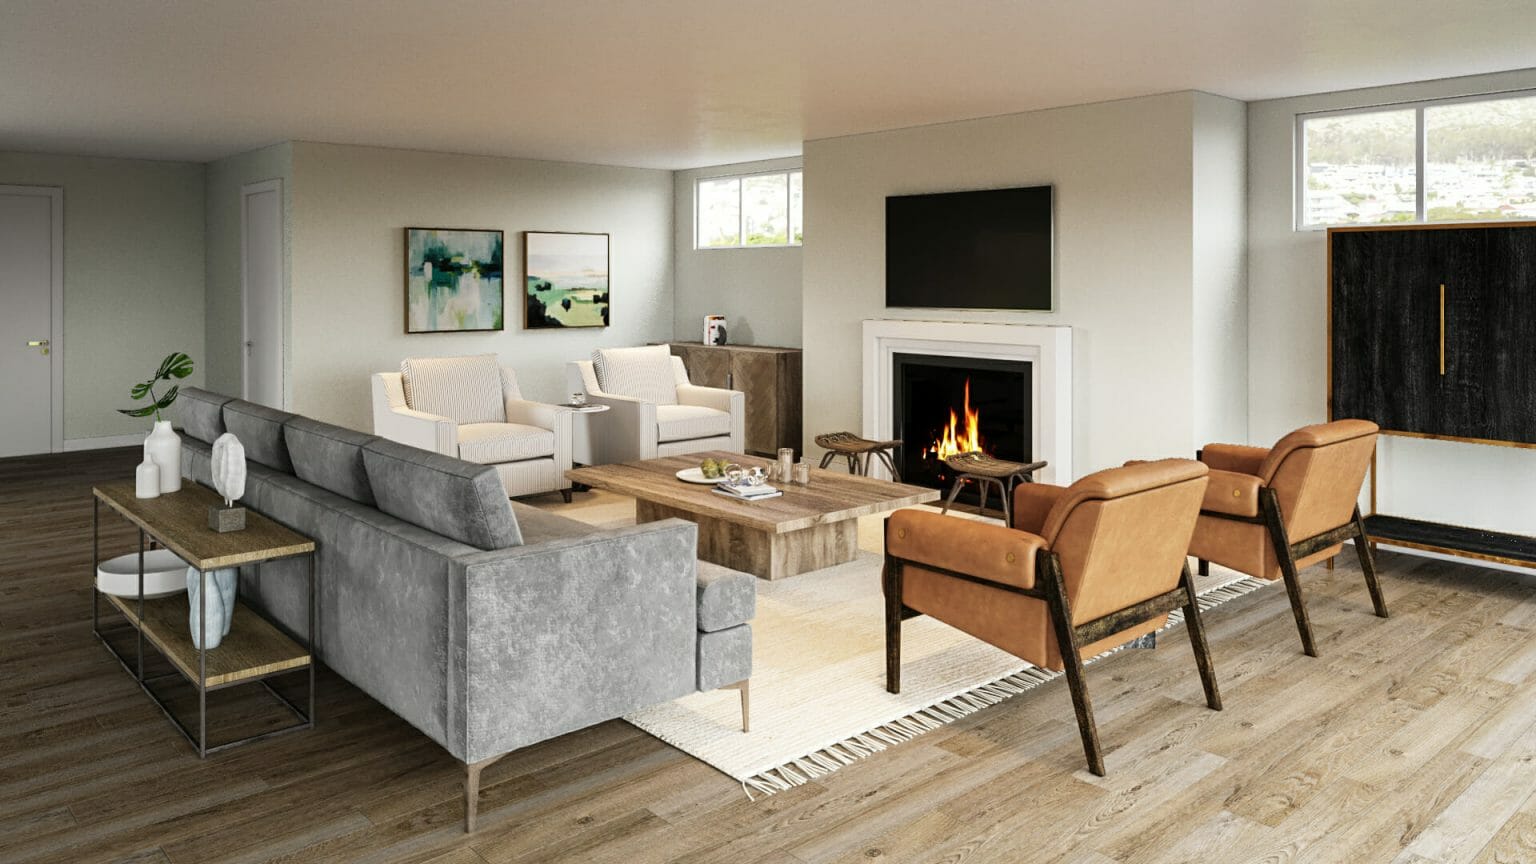 Cozy Contemporary Living Room By Decorilla And Boston Interior Decorator Ashley H.  1536x864 